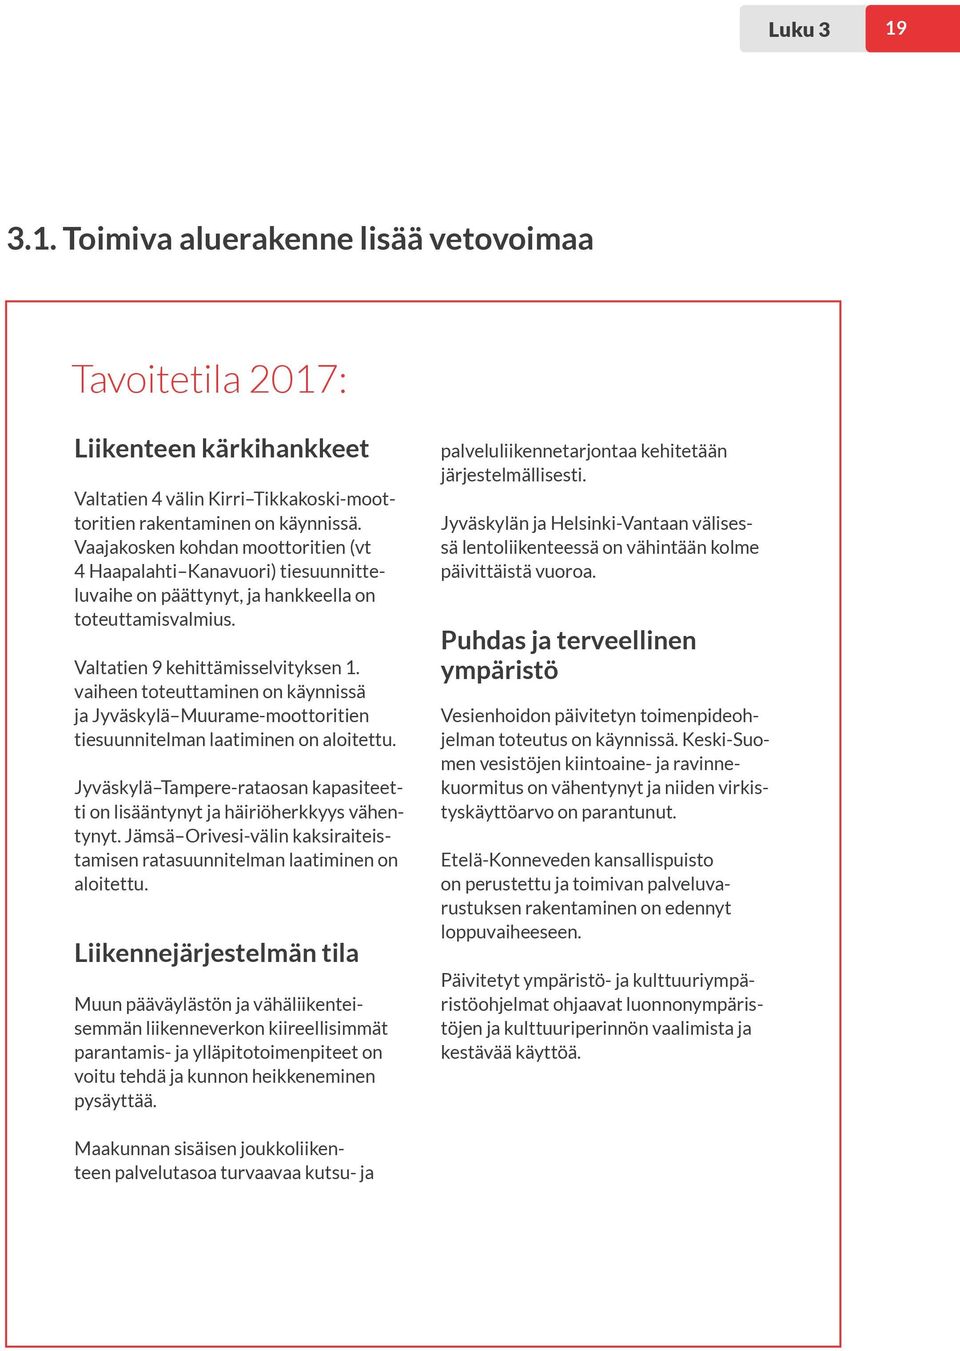 vaiheen toteuttaminen on käynnissä ja Jyväskylä Muurame-moottoritien tiesuunnitelman laatiminen on aloitettu. Jyväskylä Tampere-rataosan kapasiteetti on lisääntynyt ja häiriöherkkyys vähentynyt.